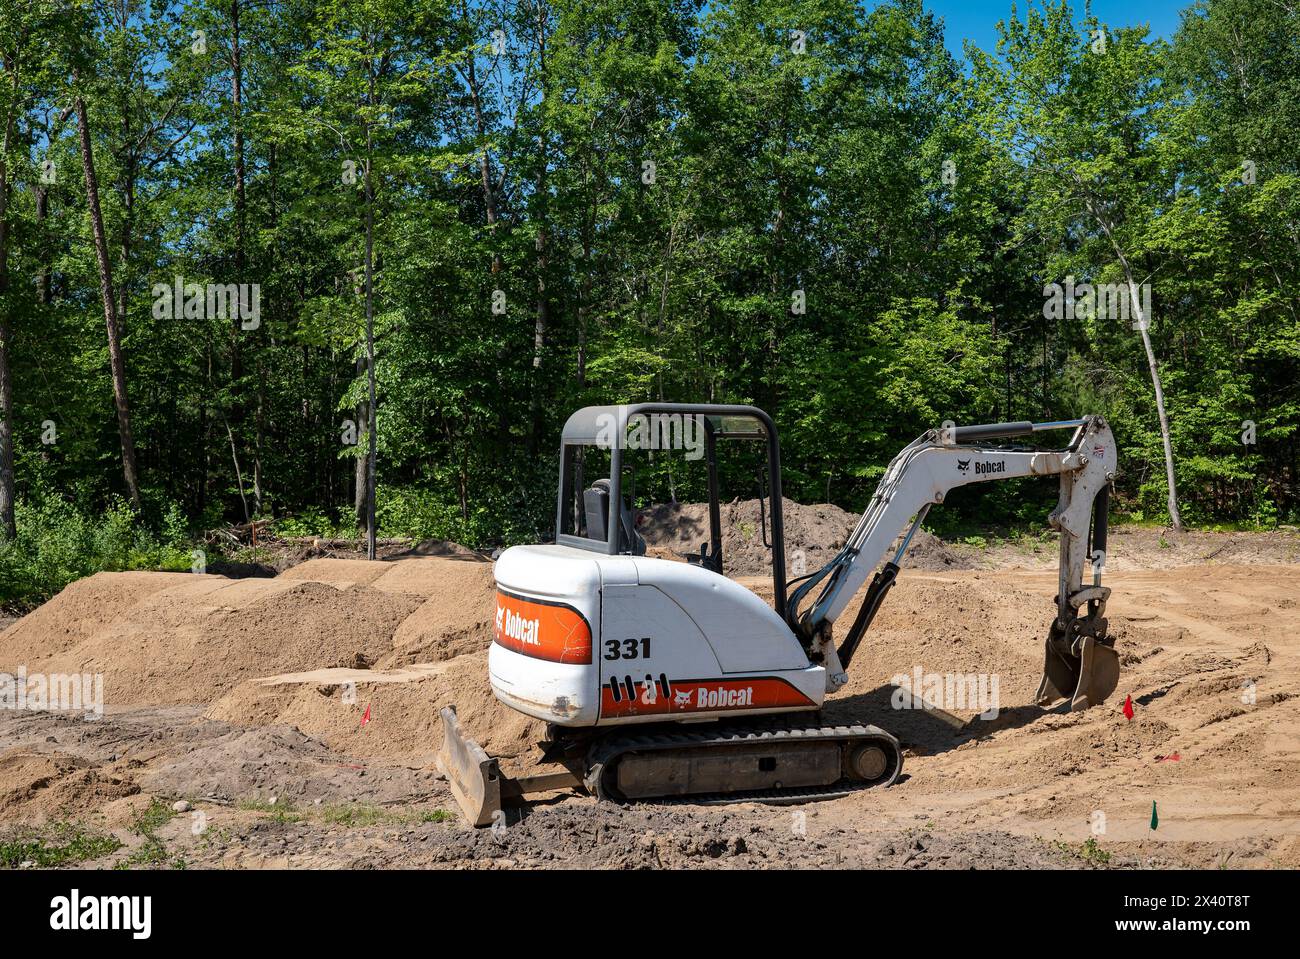 CROW WING CO, MN - 6 juin 2021 : une mini-pelle Bobcat 331, avec des chenilles de direction à glissement, est assise sur la terre à un terrain de construction vide bordé d'arbres, en préparation f Banque D'Images